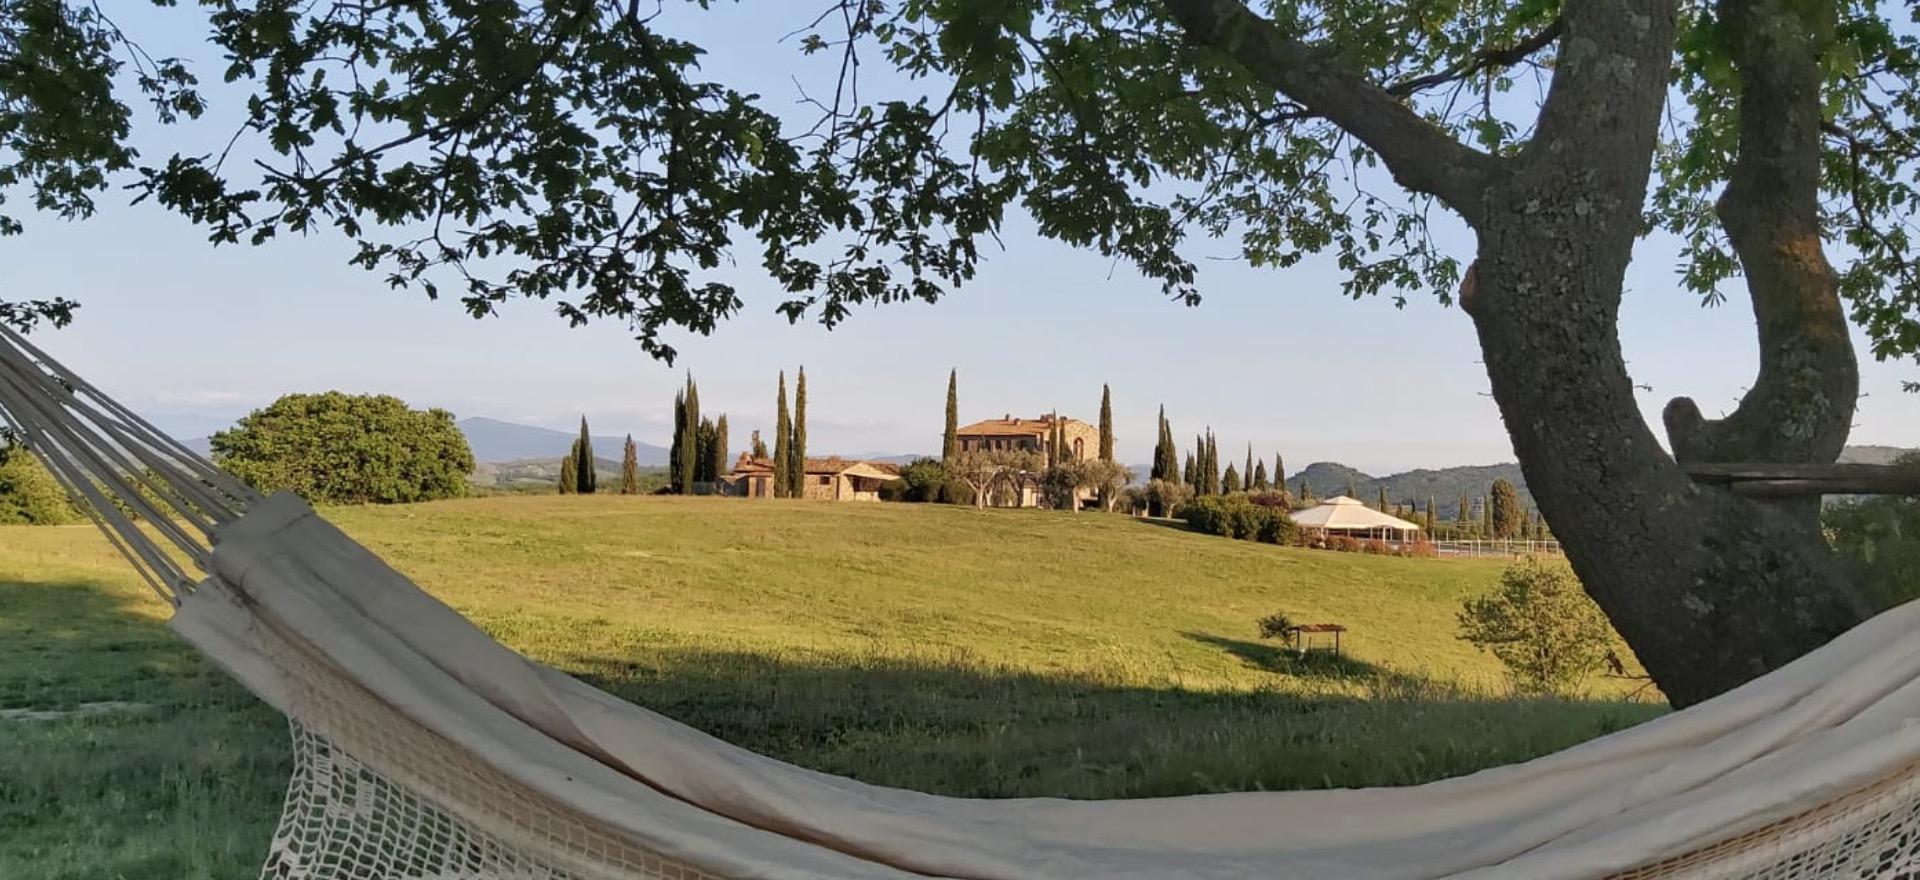 Agriturismo Toscane, rustig en landelijk gelegen